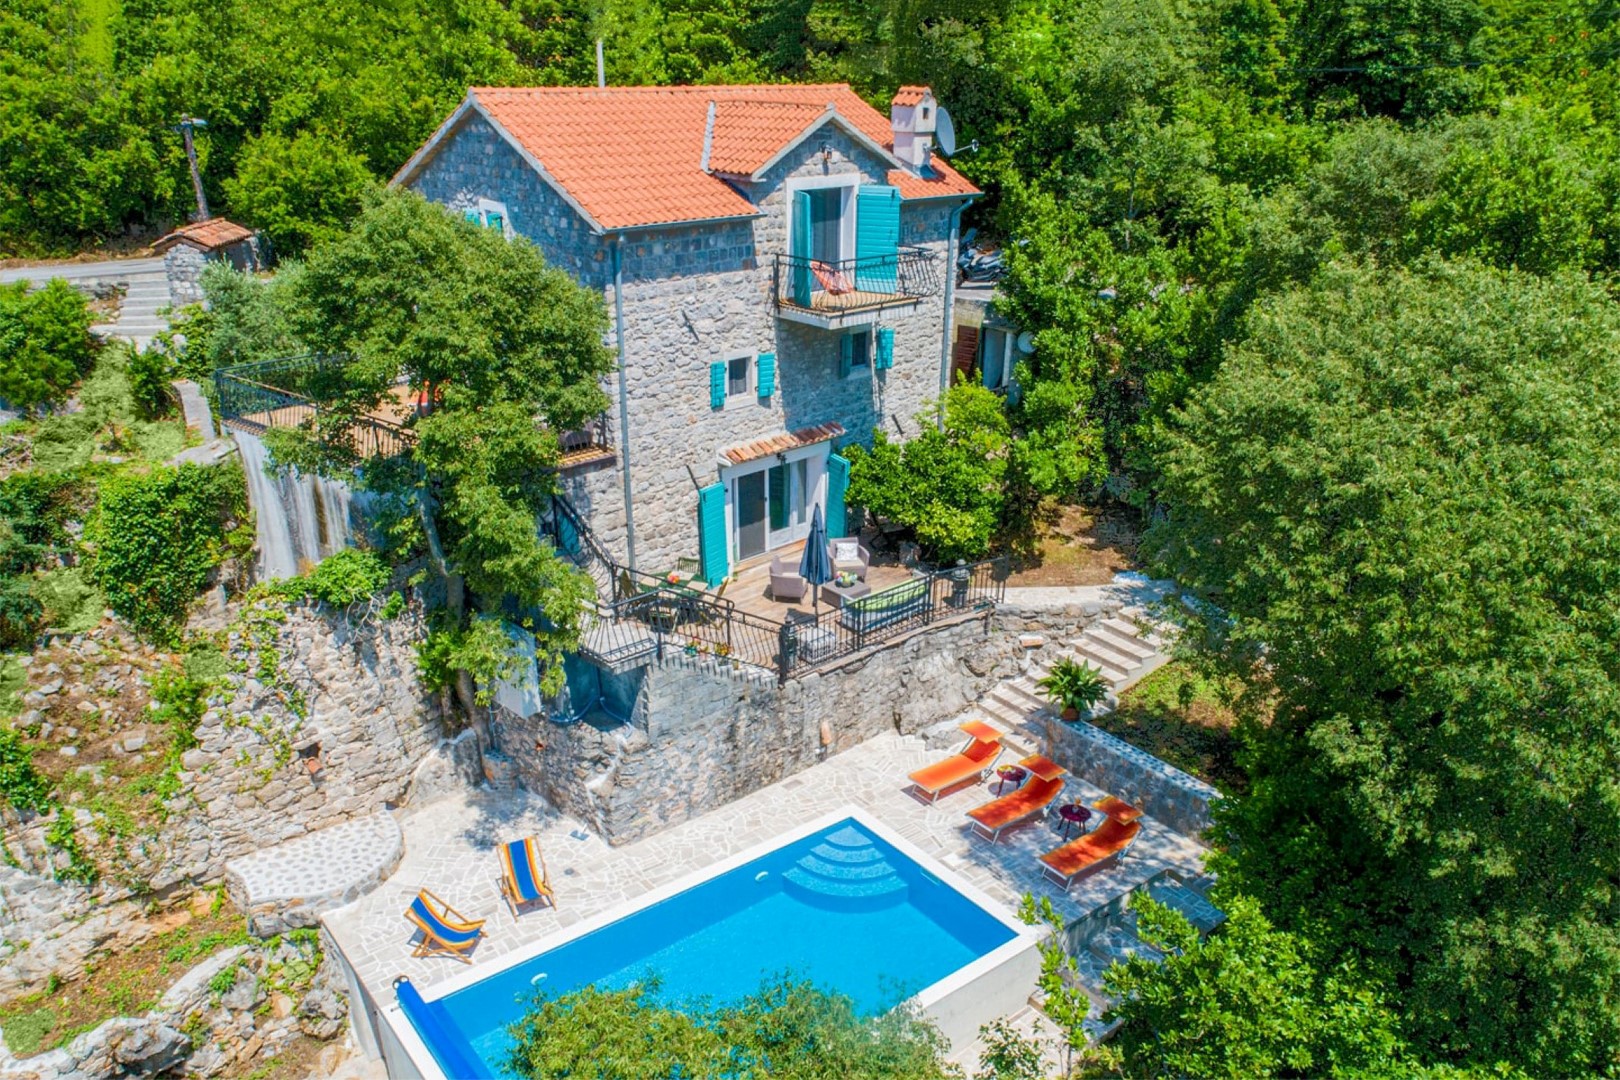 Луштица, Миловичи - роскошно отреставрированный каменный дом с бассейном